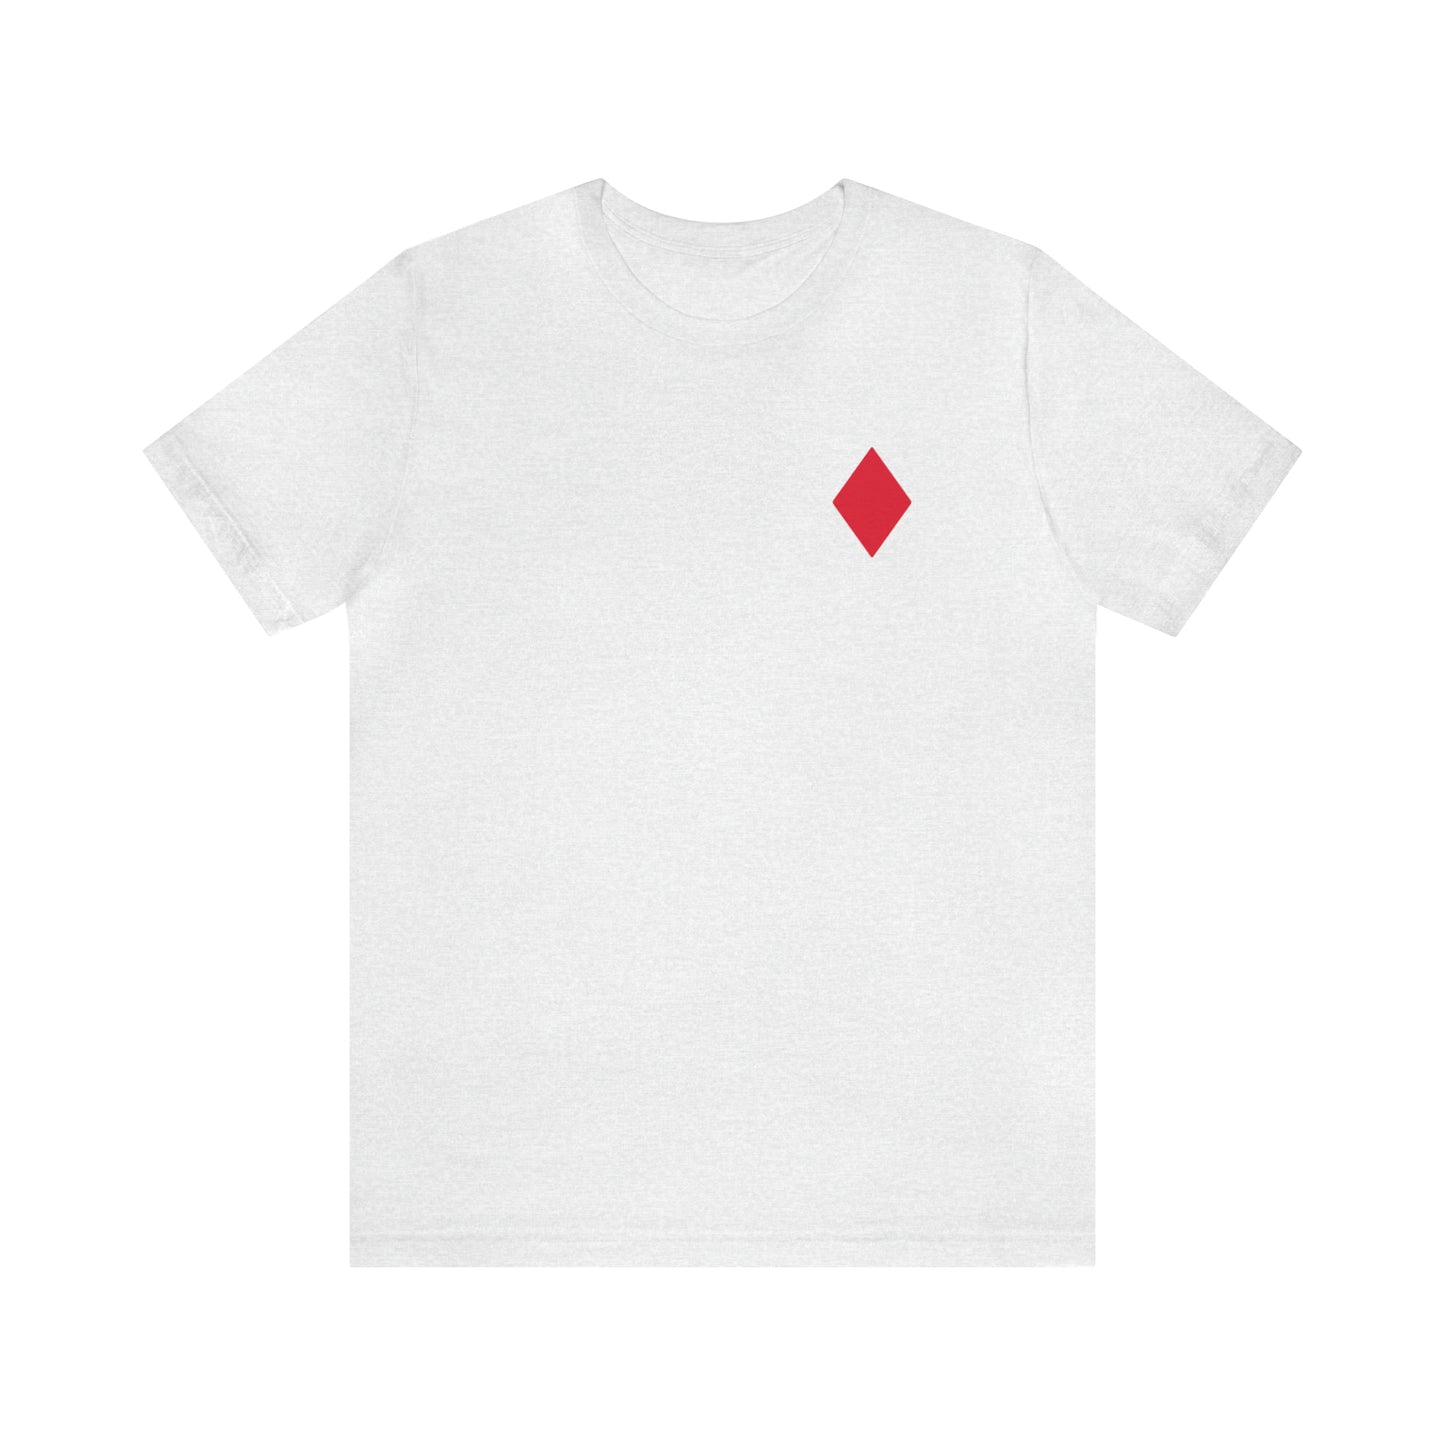 Diamonds Jersey Short Sleeve T-shirt